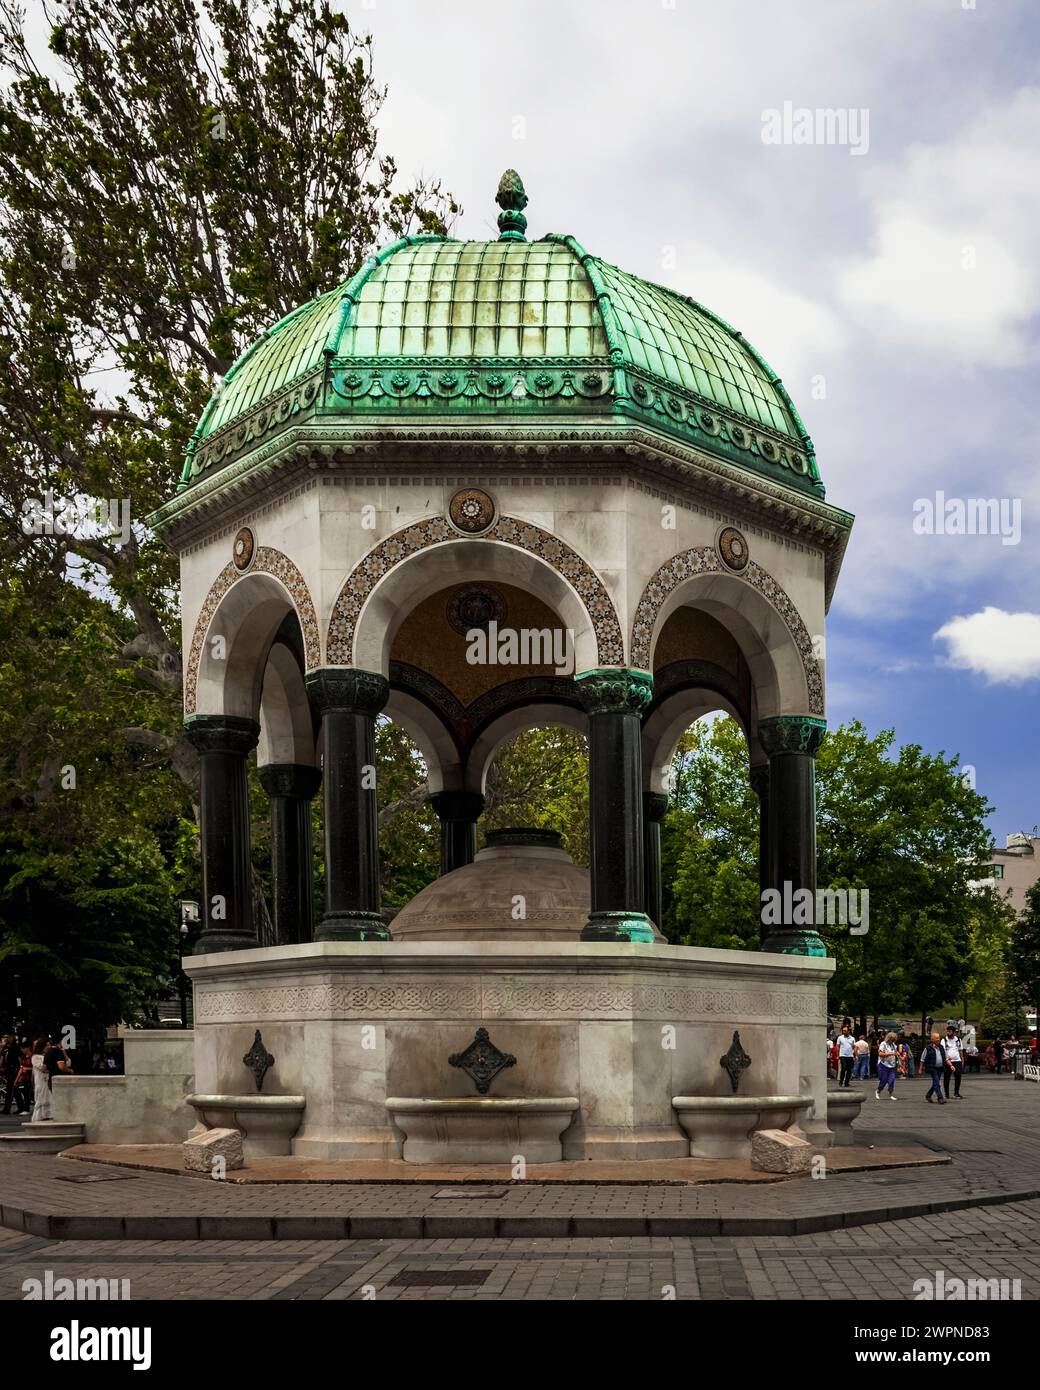 La Fontana tedesca in Piazza Sultanahmet, adiacente alla Moschea Blu e nell'area dove era l'antico ippodromo di Costantinopoli Foto Stock